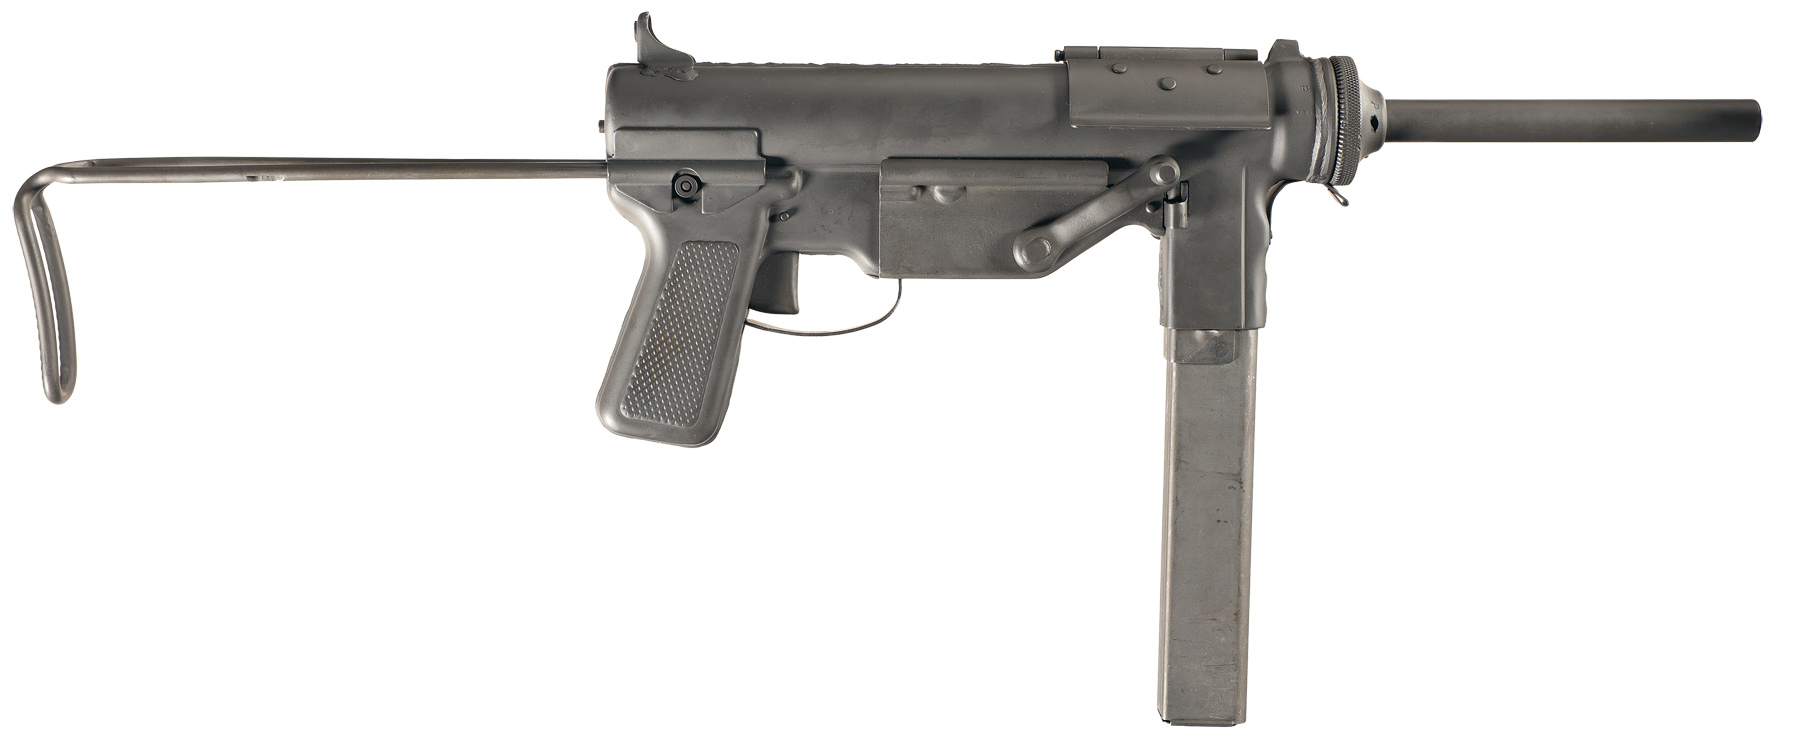 745... М3("Grease gun") - американский пистолет-пулемёт времён Вт...